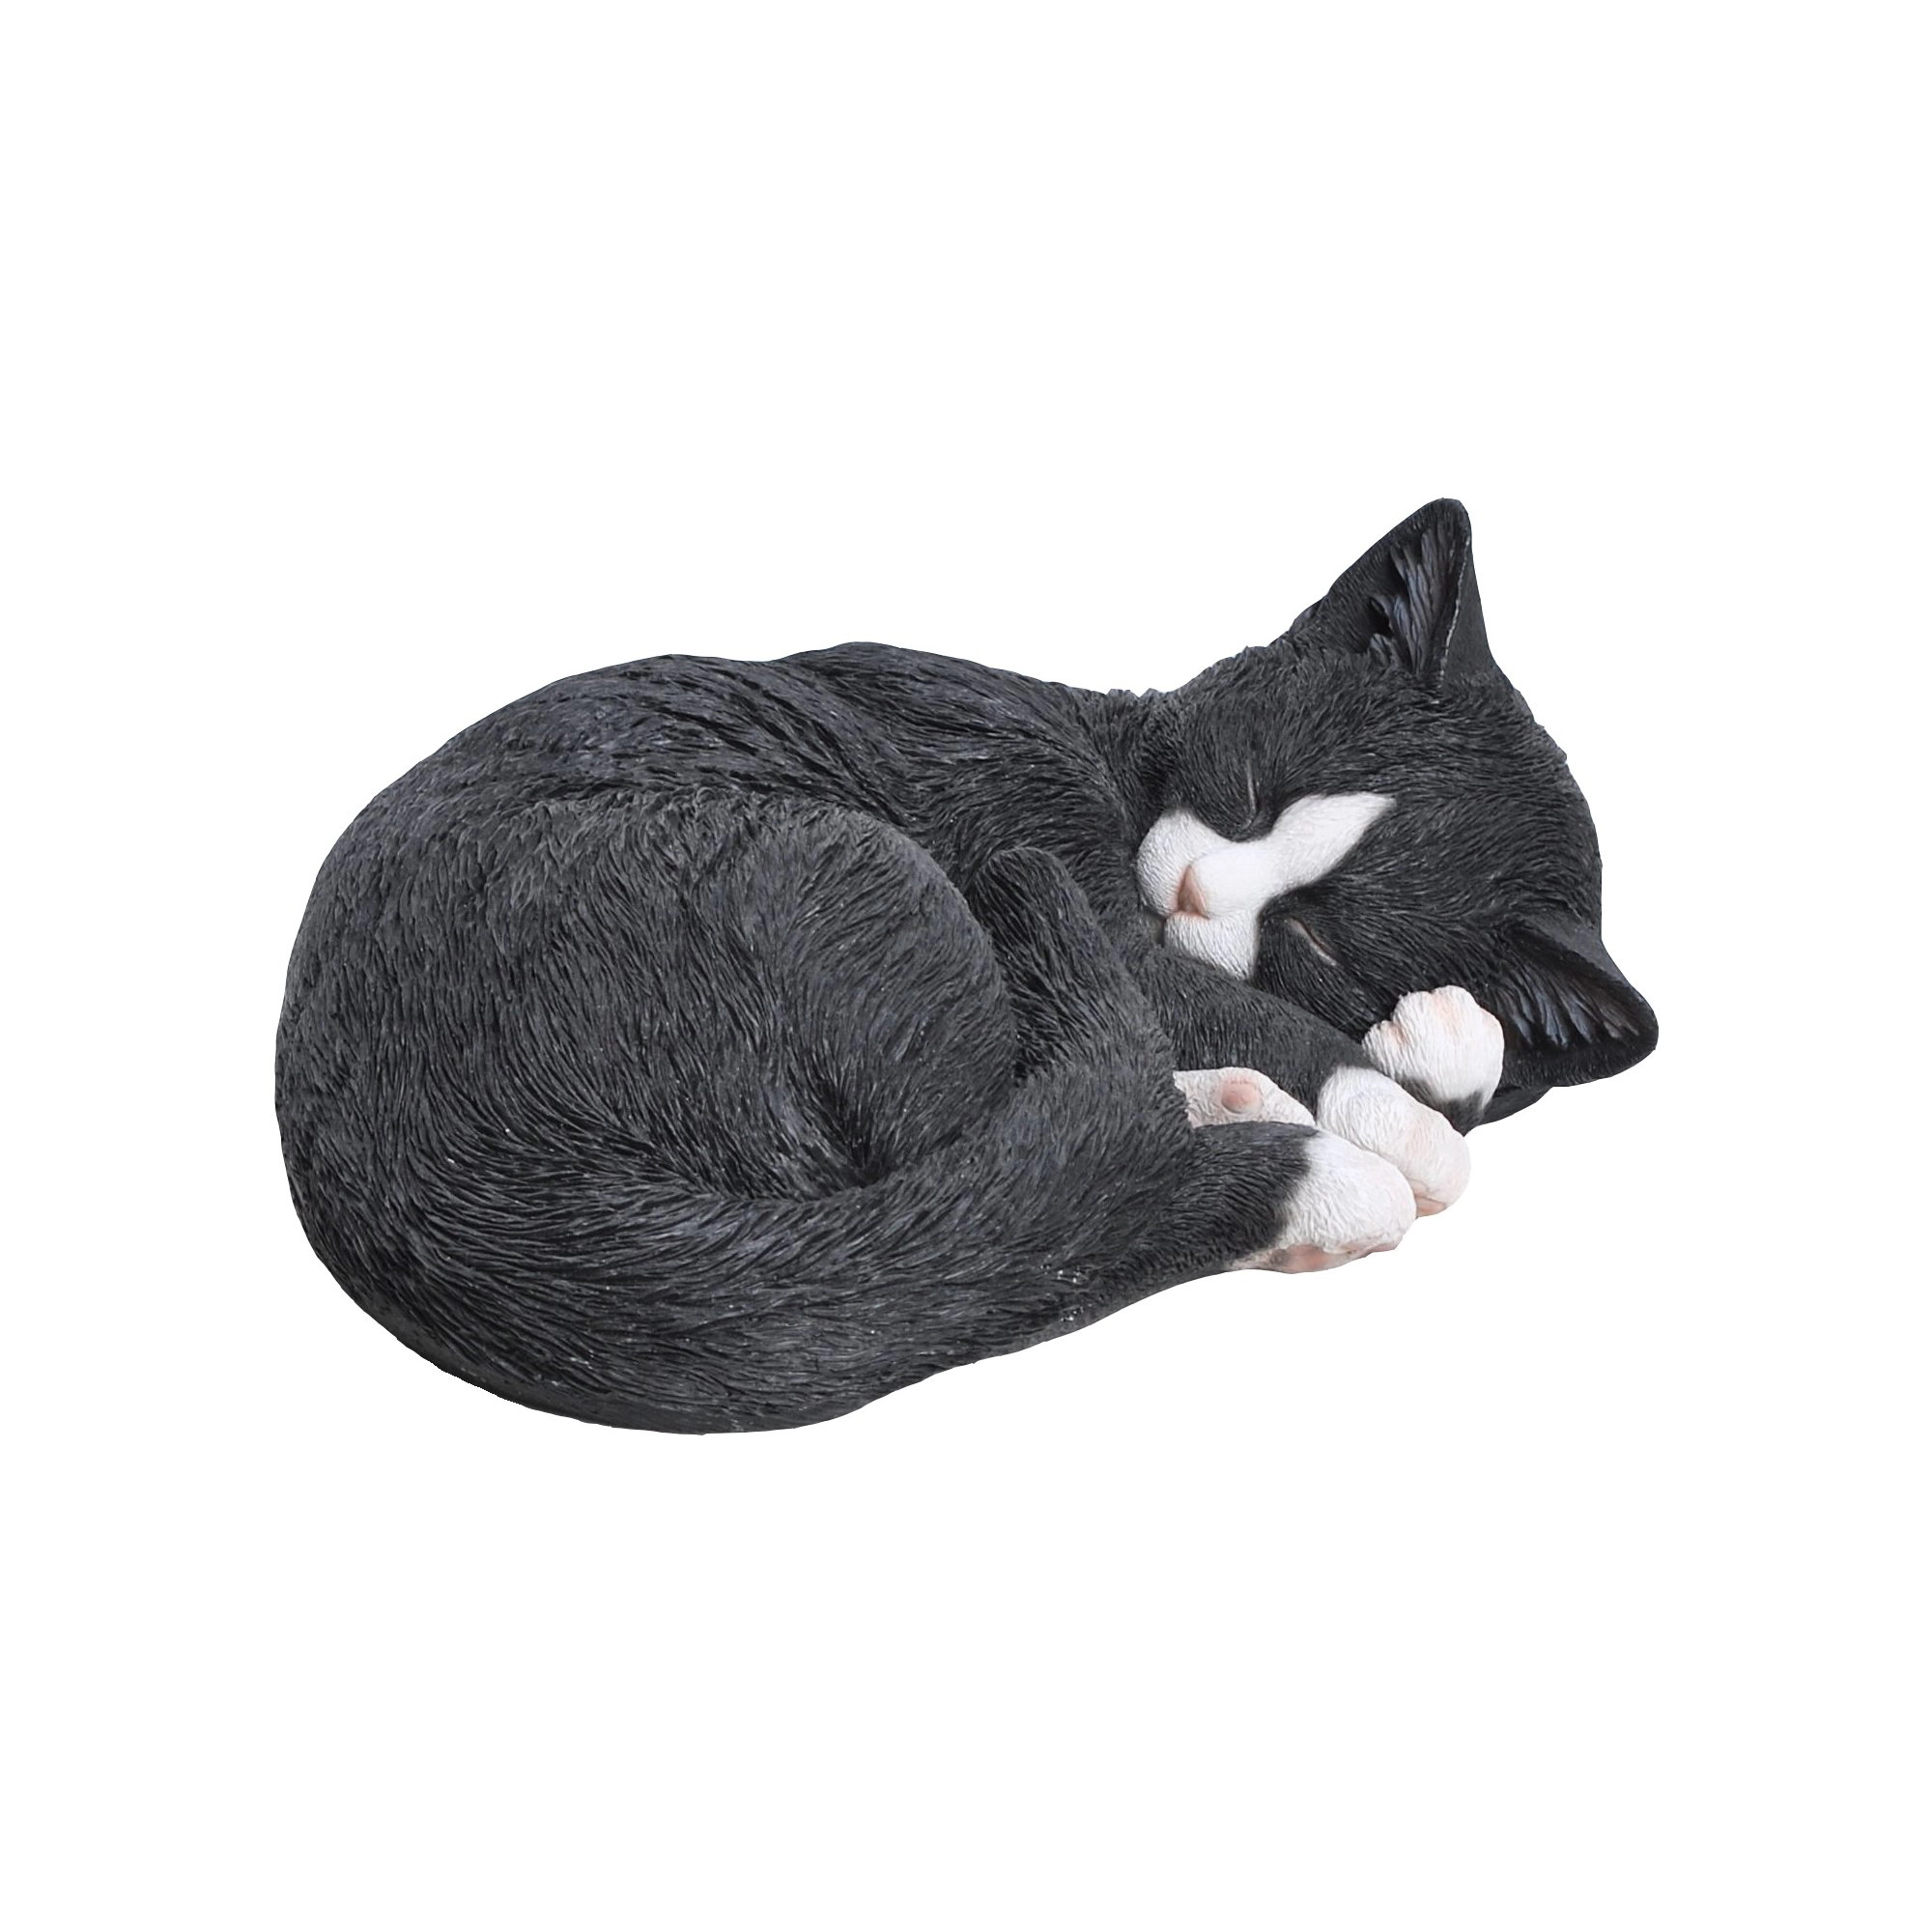 Deko-Figur Katze schlafend 28 cm kaufen bei OBI